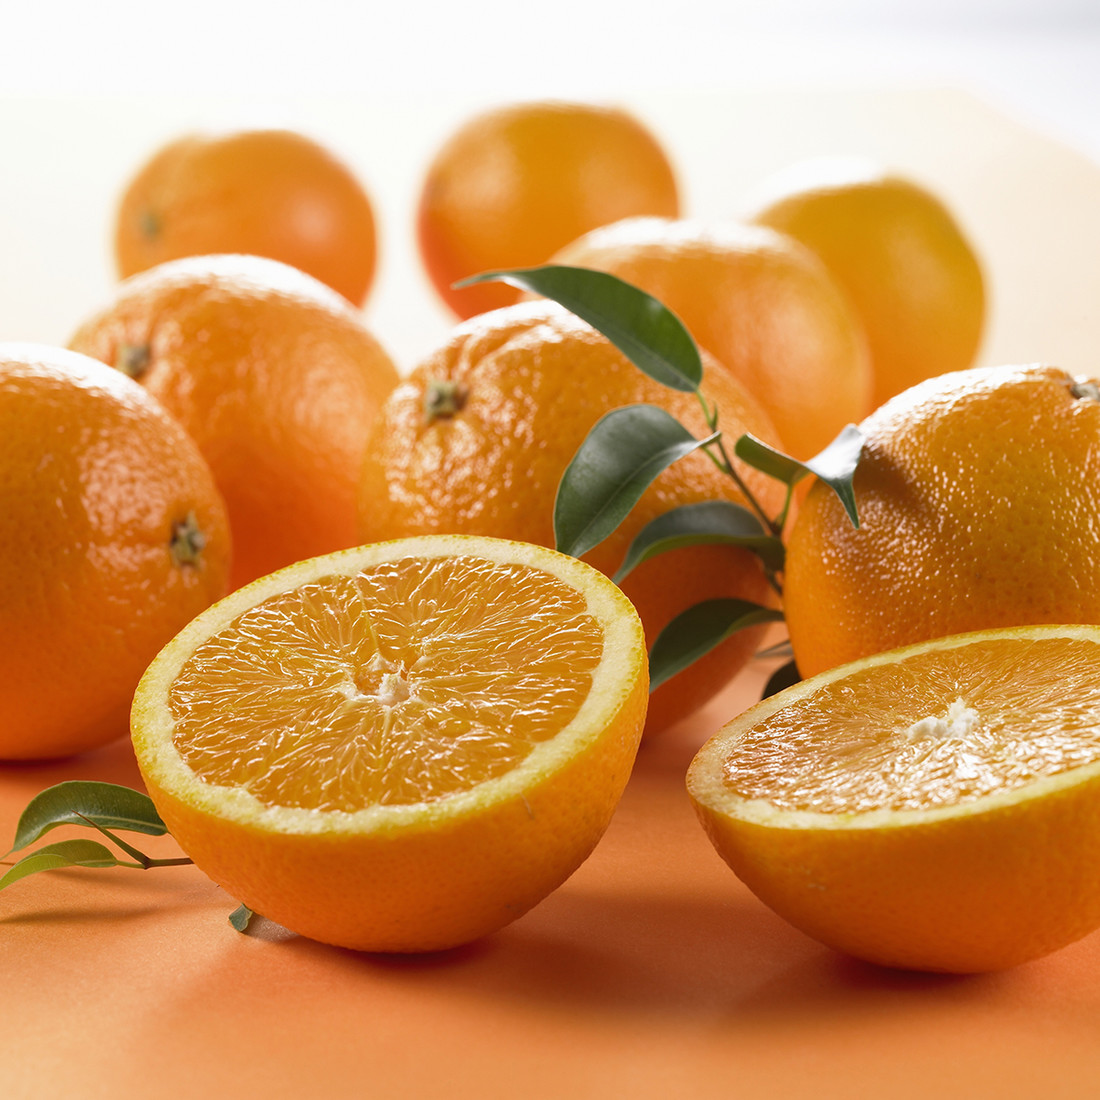 Сделай сам: апельсин против морщин и для сияния кожи